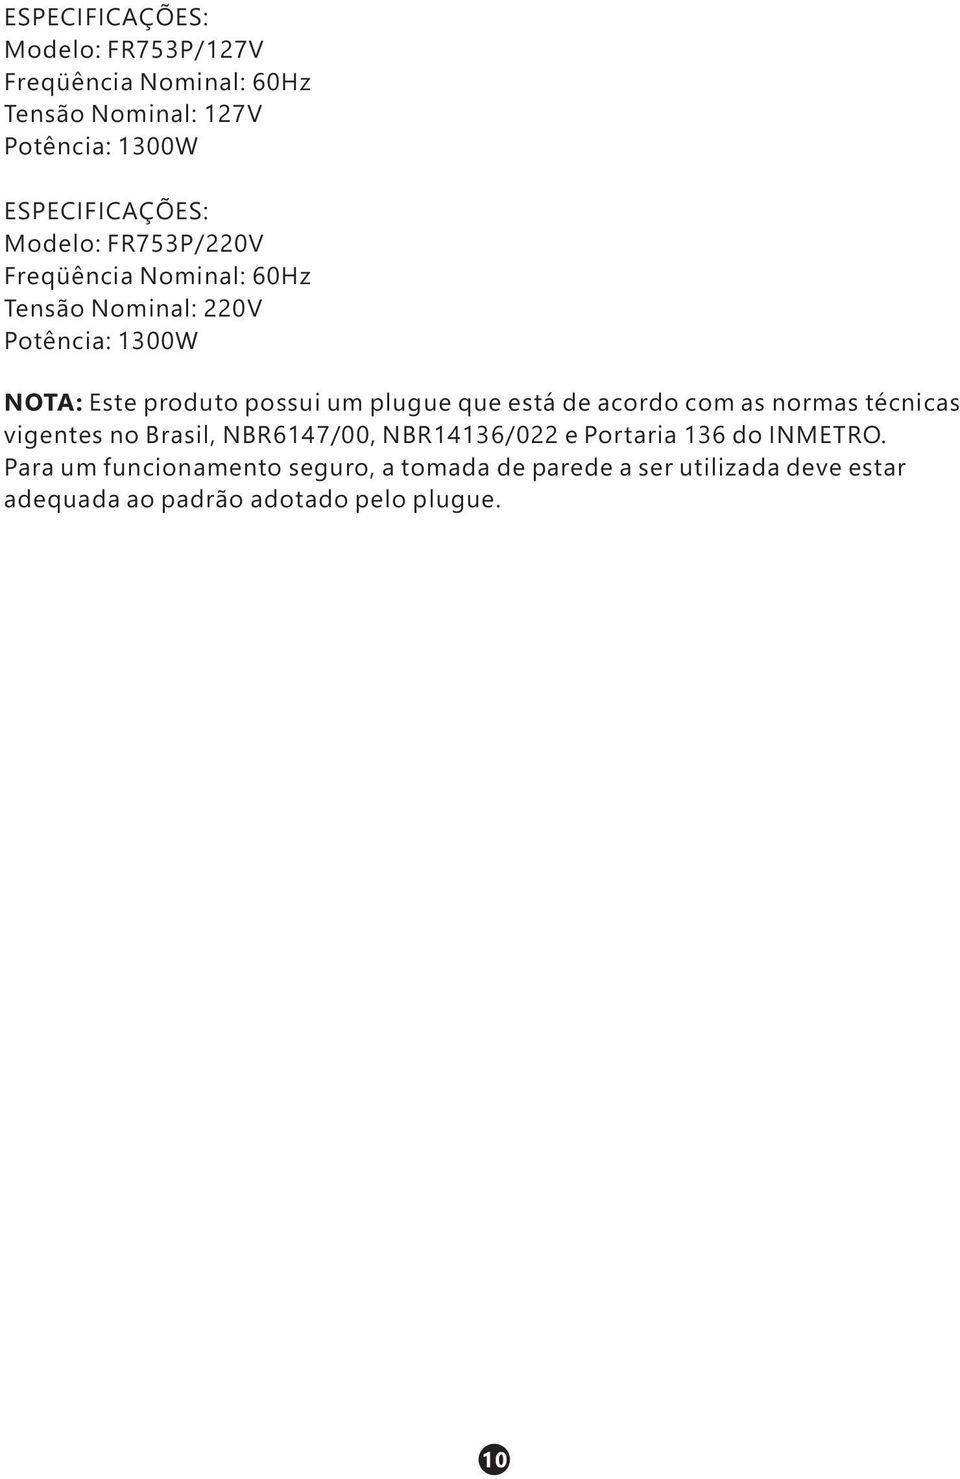 plugue que está de acordo com as normas técnicas vigentes no Brasil, NBR6147/00, NBR14136/022 e Portaria 136 do